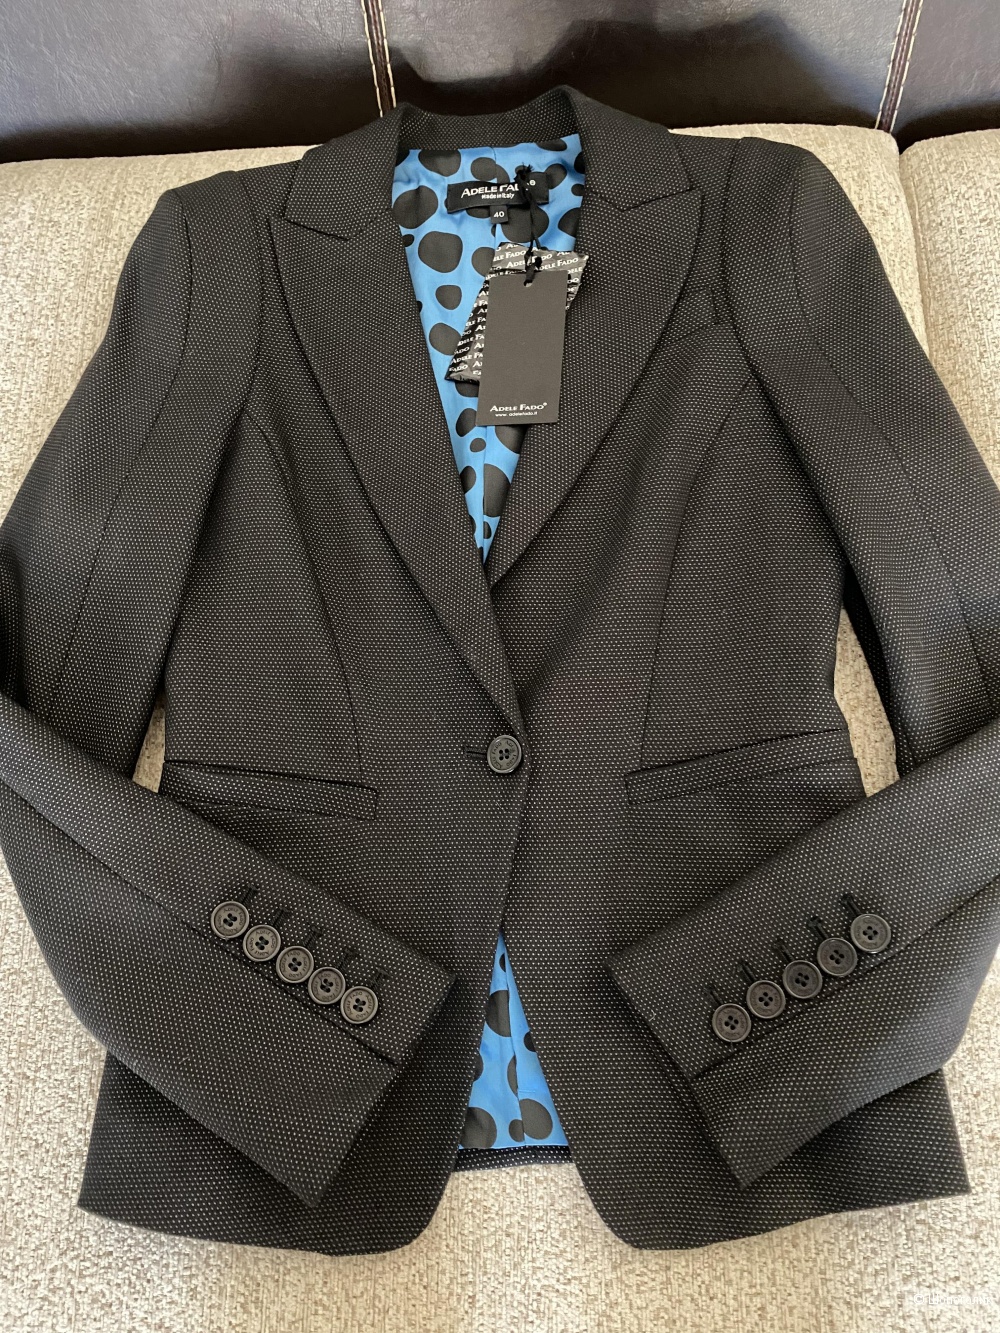 Пиджак Adele Fado размер S-XS